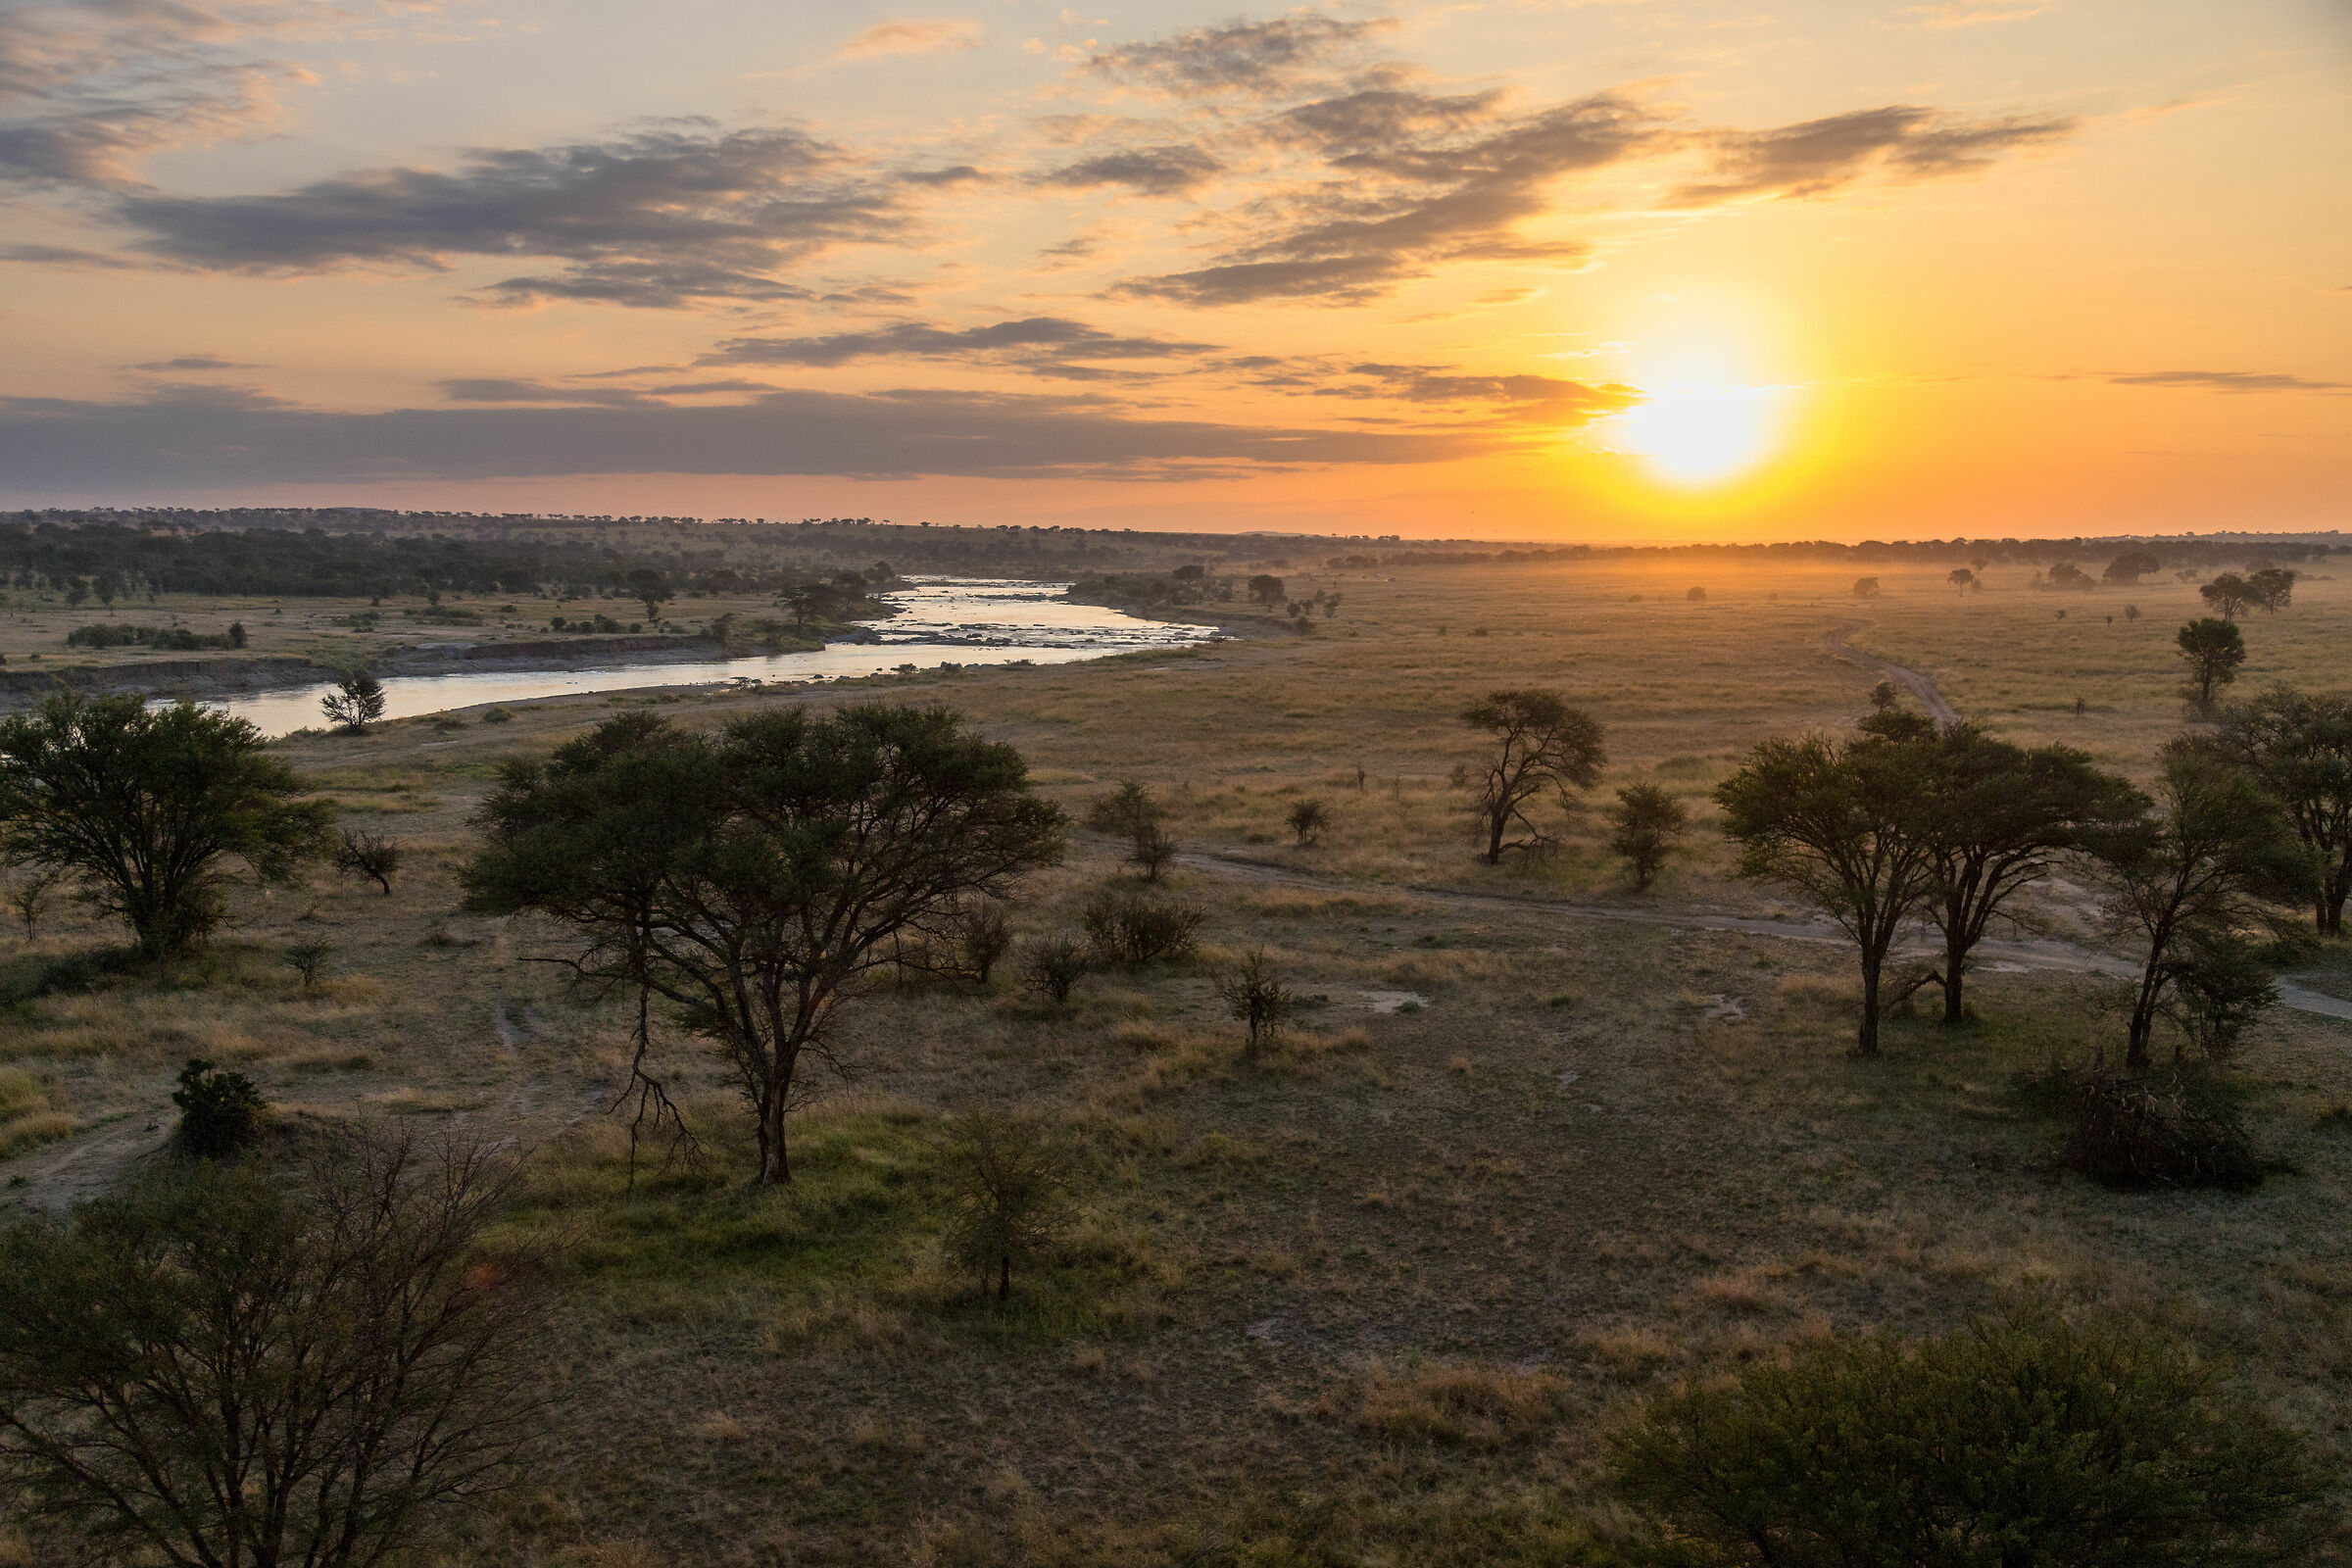 The serengeti at dawn...